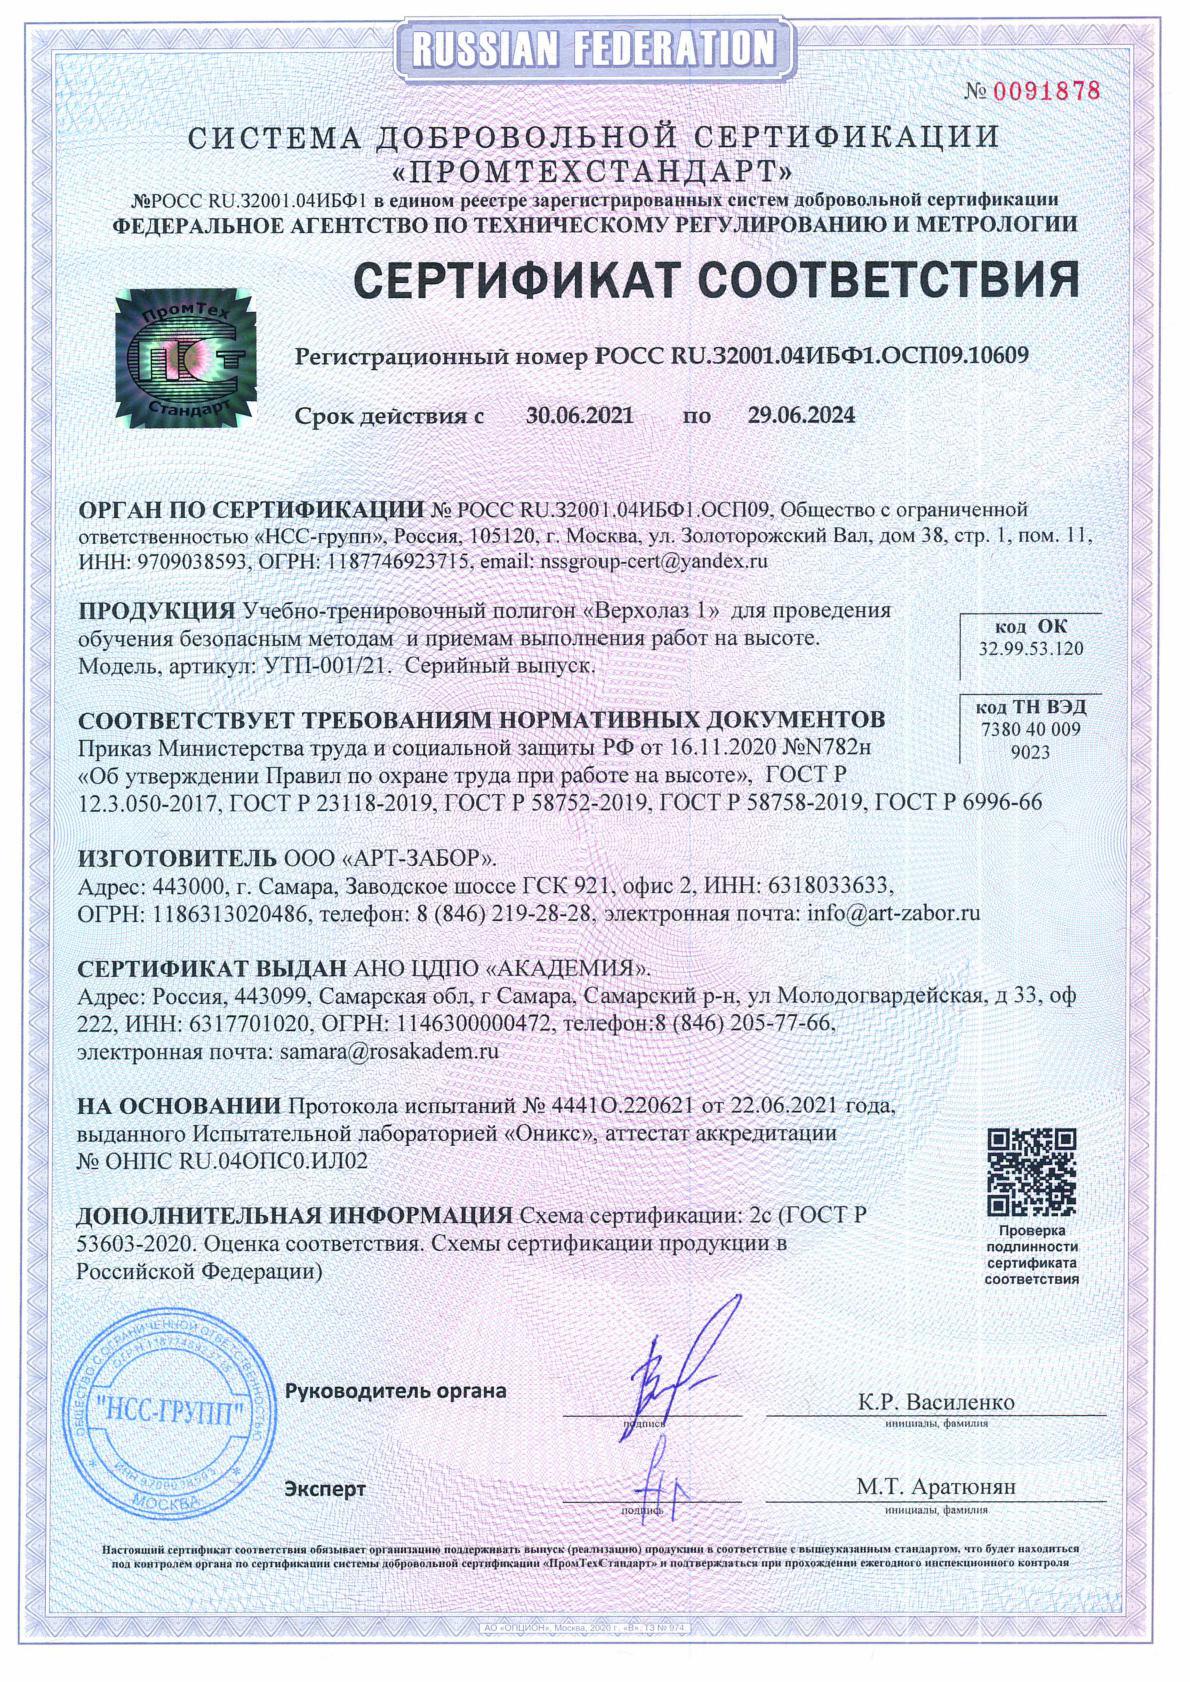 Сертификат соответствия учебно-тренировочного полигона «Верхолаз 1»